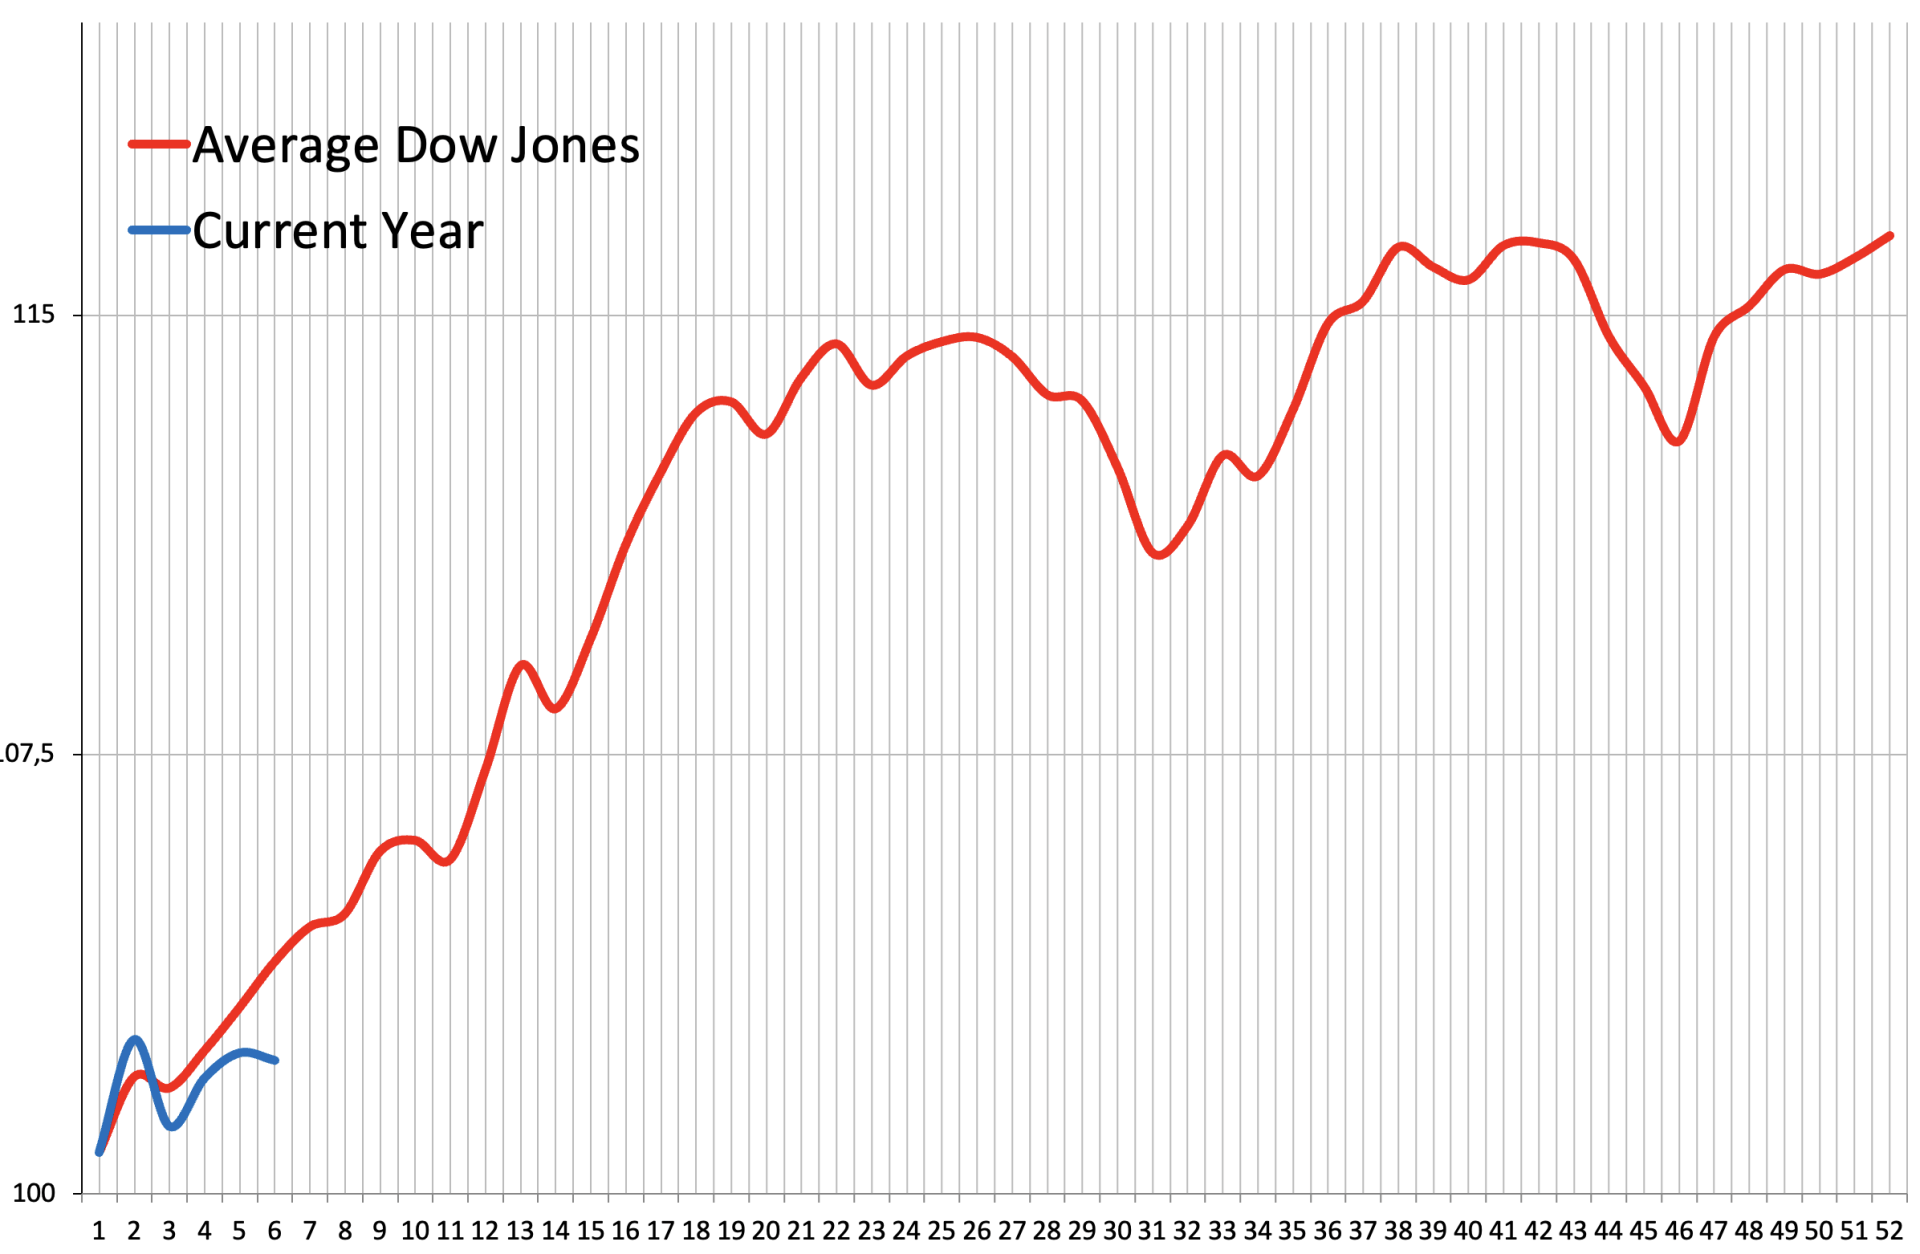 Frattale previsionale per il 2023. La linea rossa rappresenta l’andamento del Dow Jones sulla base delle serie storiche, la linea blu l’andamento reale per l’anno 2023